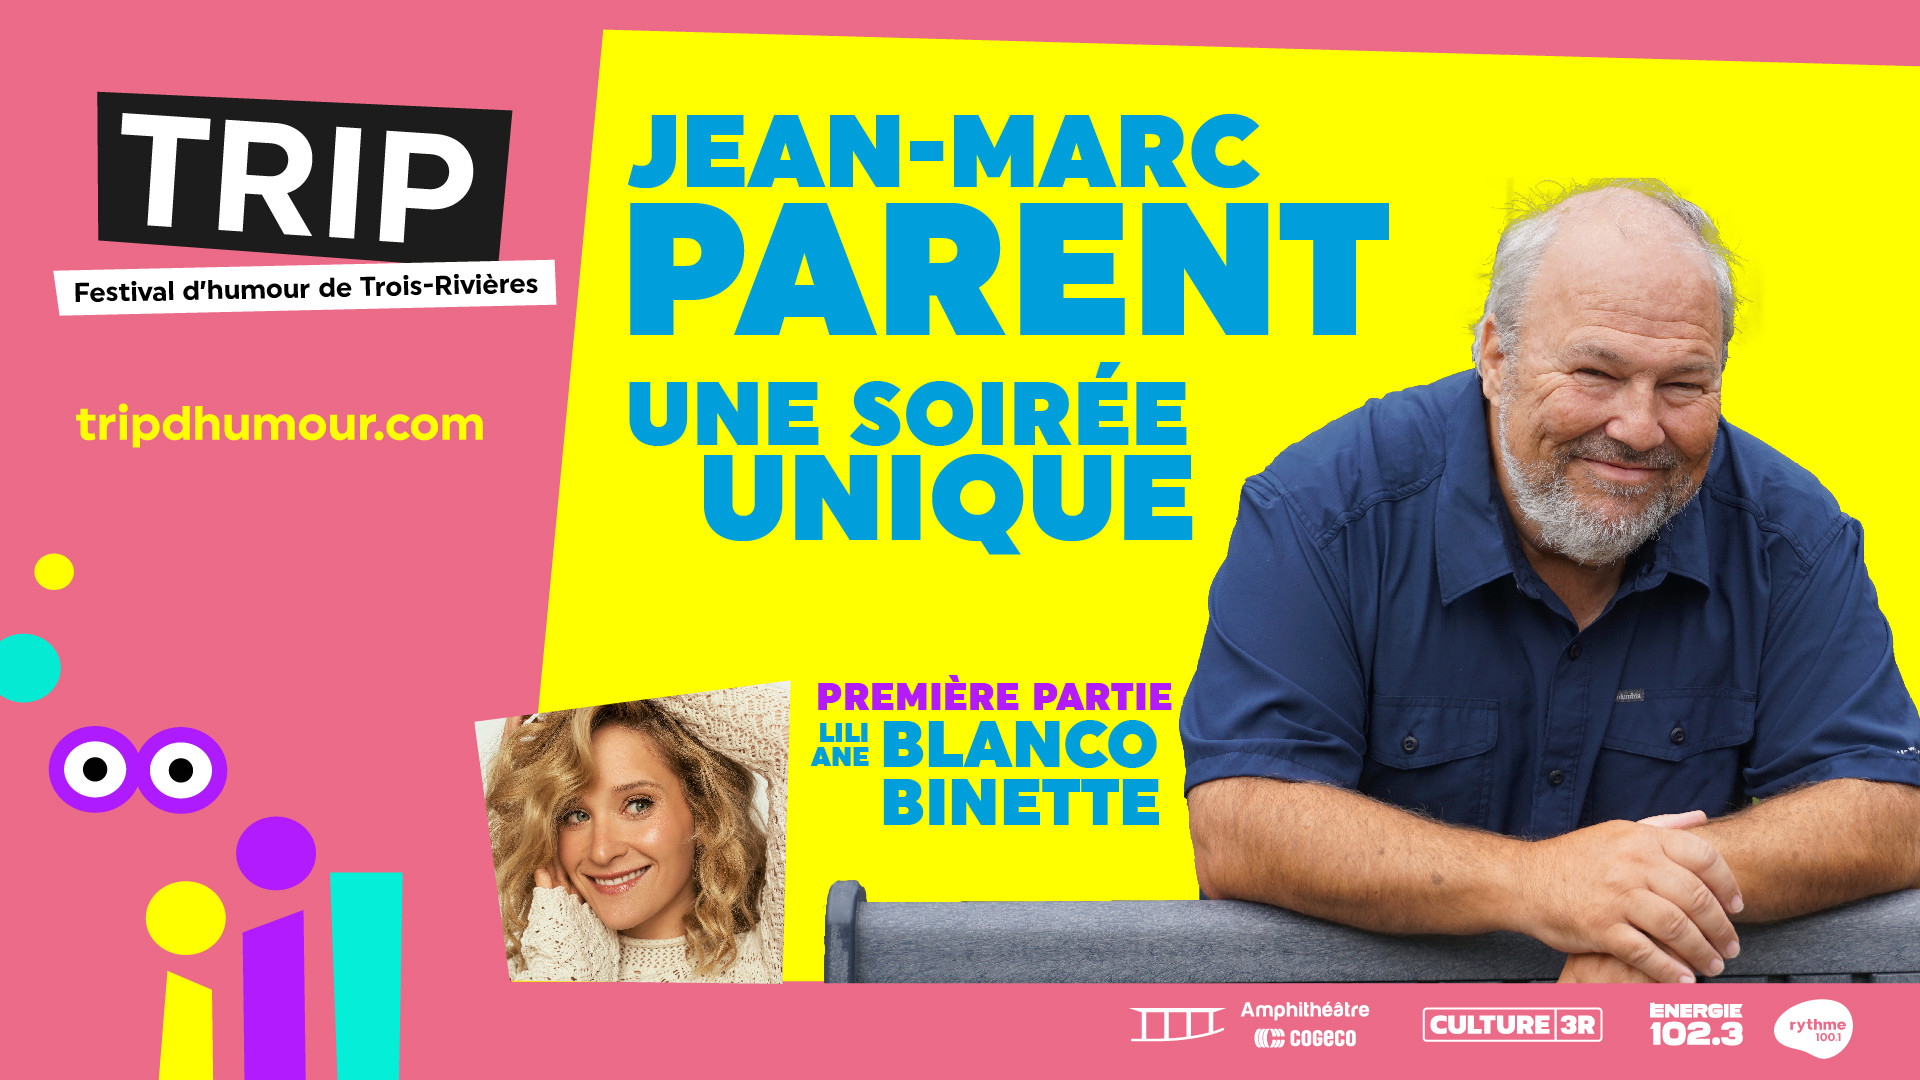 Jean-Marc Parent